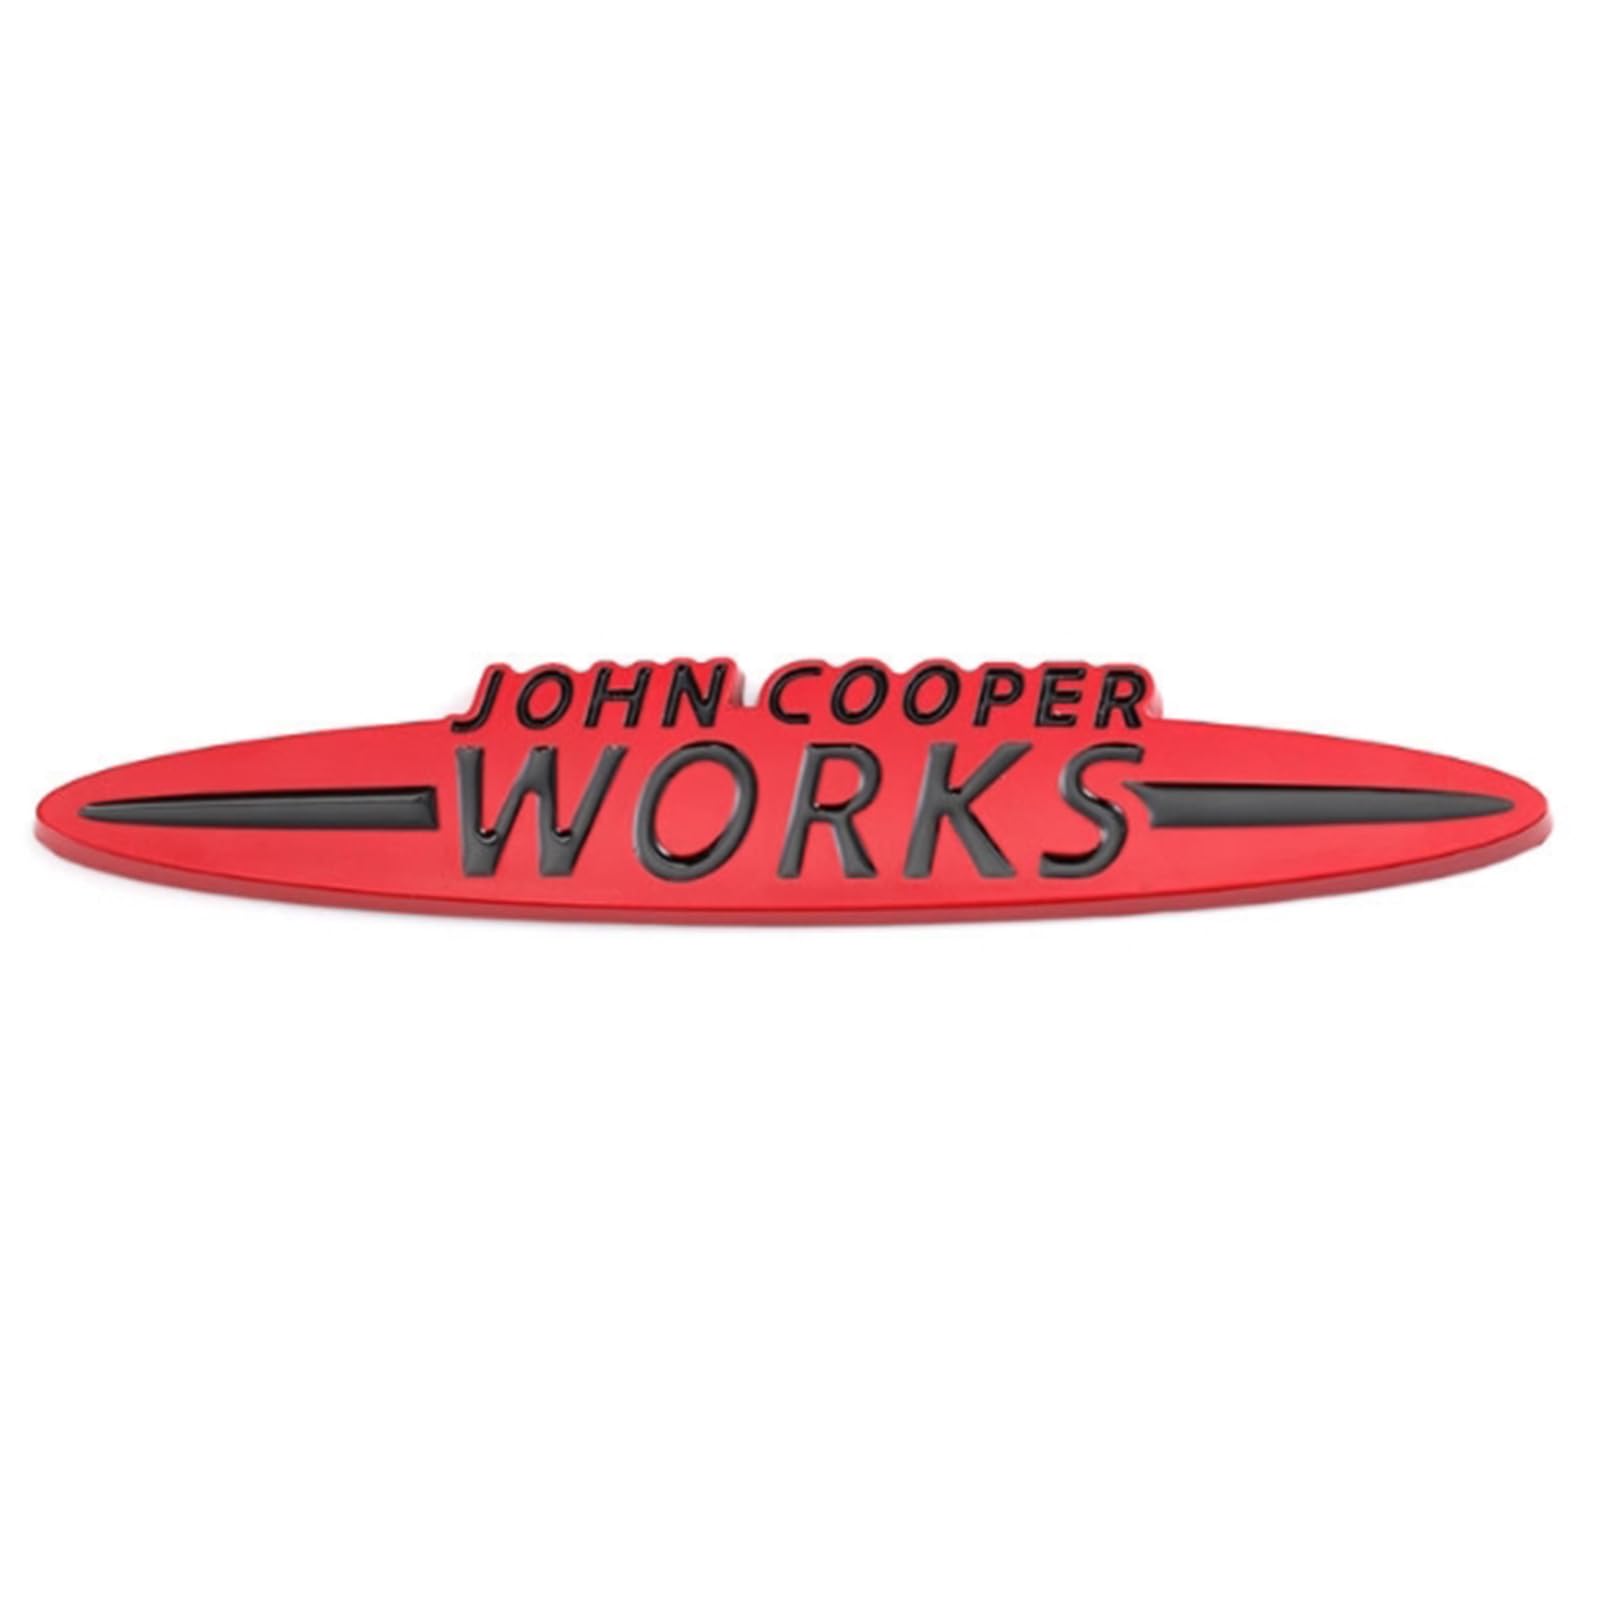 3D Metall Auto Aufkleber für John Cooper Works, Selbstklebend Logo Emblem Badge Abzeichen für Heckklappe Kofferraum, Chrom Autoaufkleber zubehör, Red- Big von MOOWI